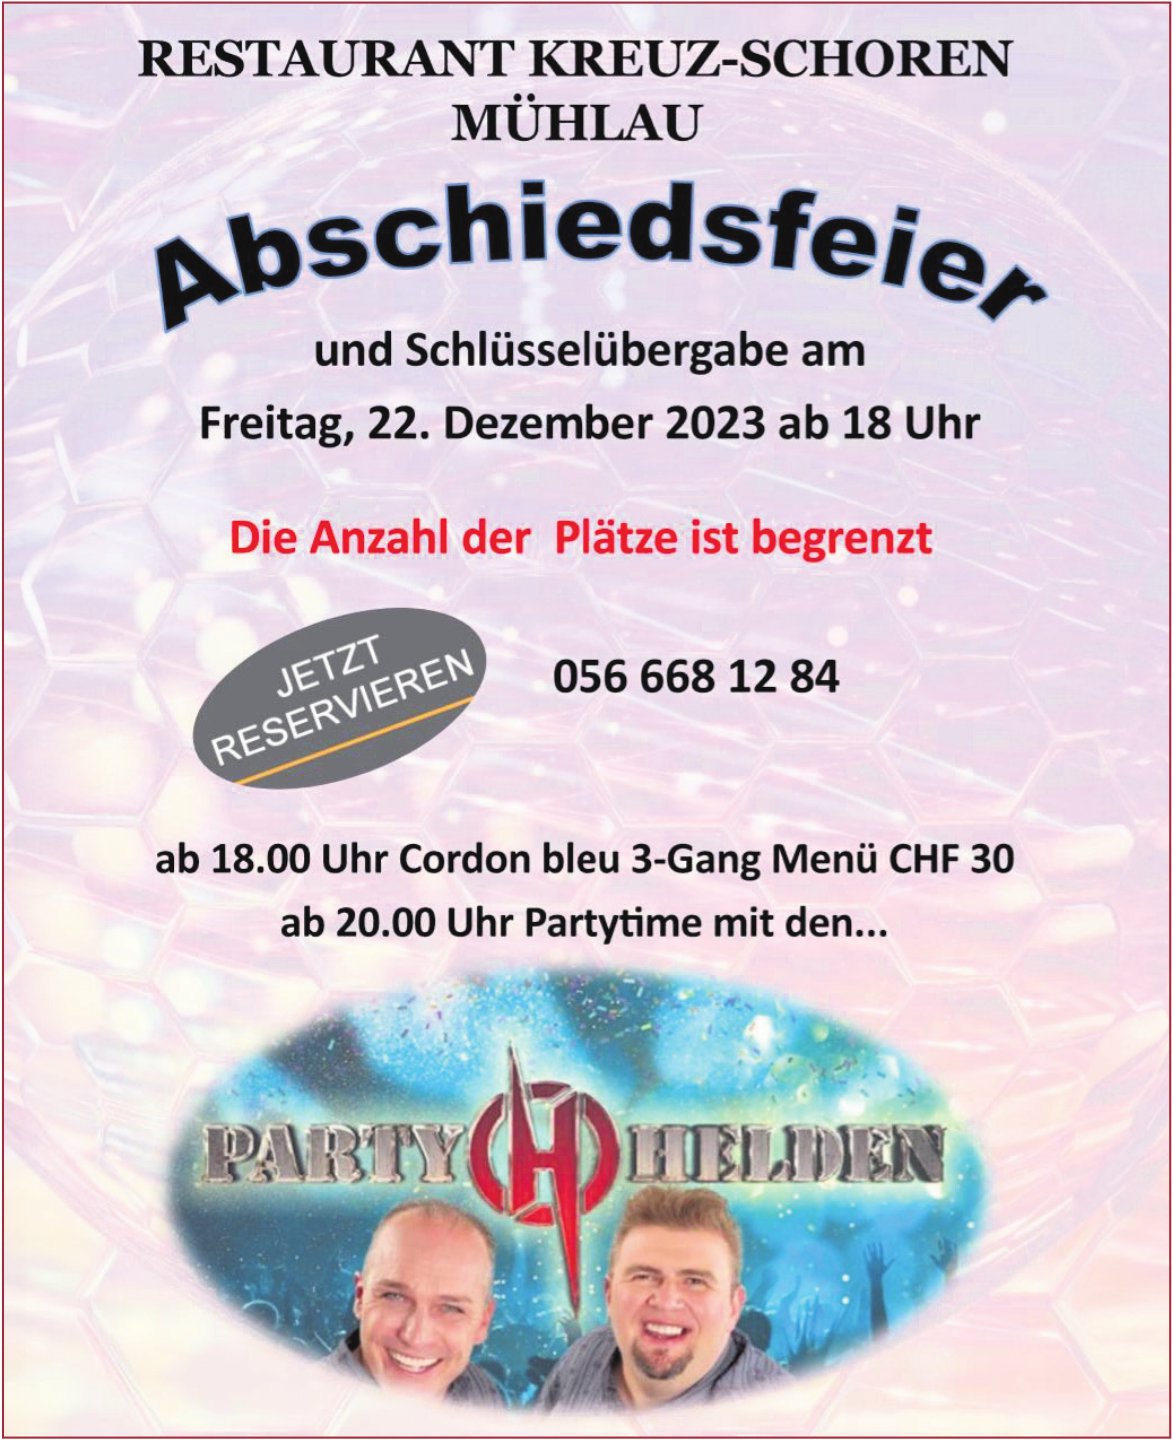 Restaurant Kreuz-Schoren, Mühlau - Abschiedsfeier und Schlüsselübergabe, 22. Dezember